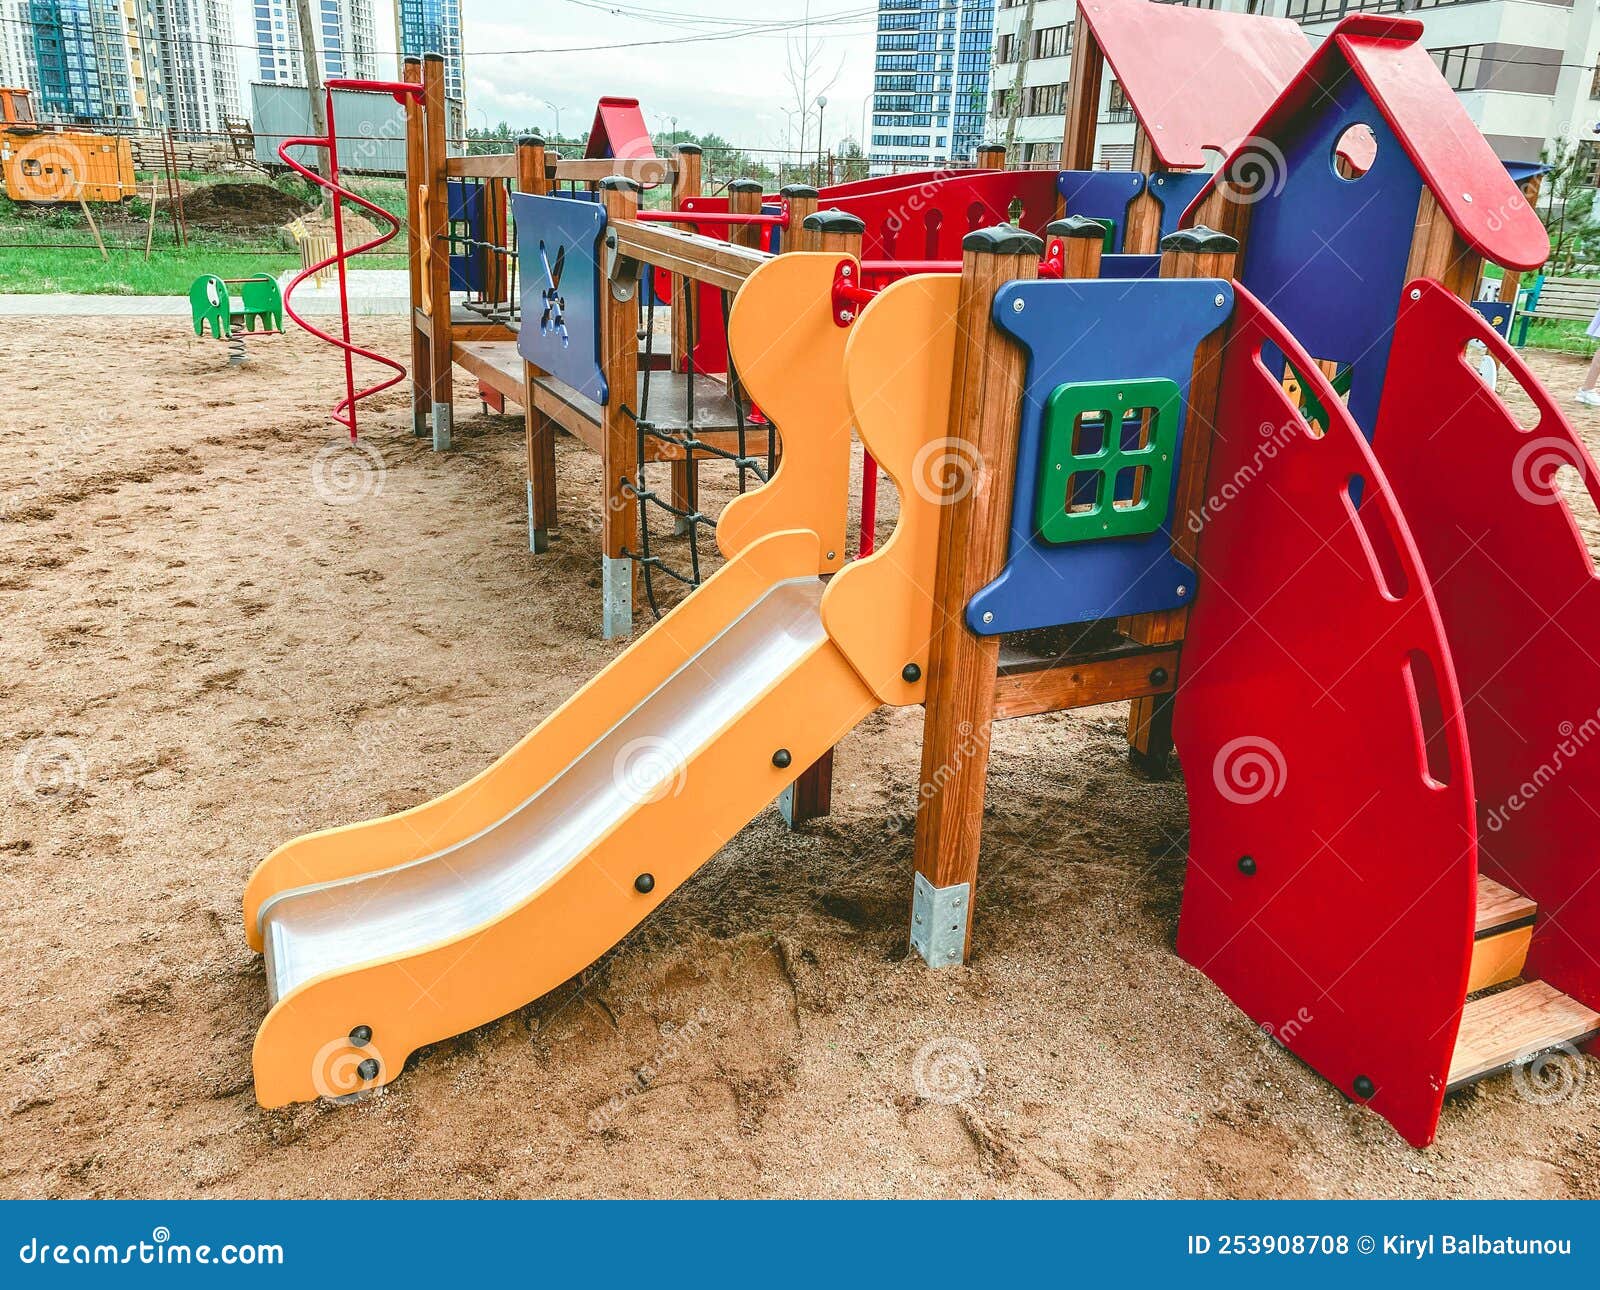 aire de jeux pour enfants avec sable. bac à sable pour enfants